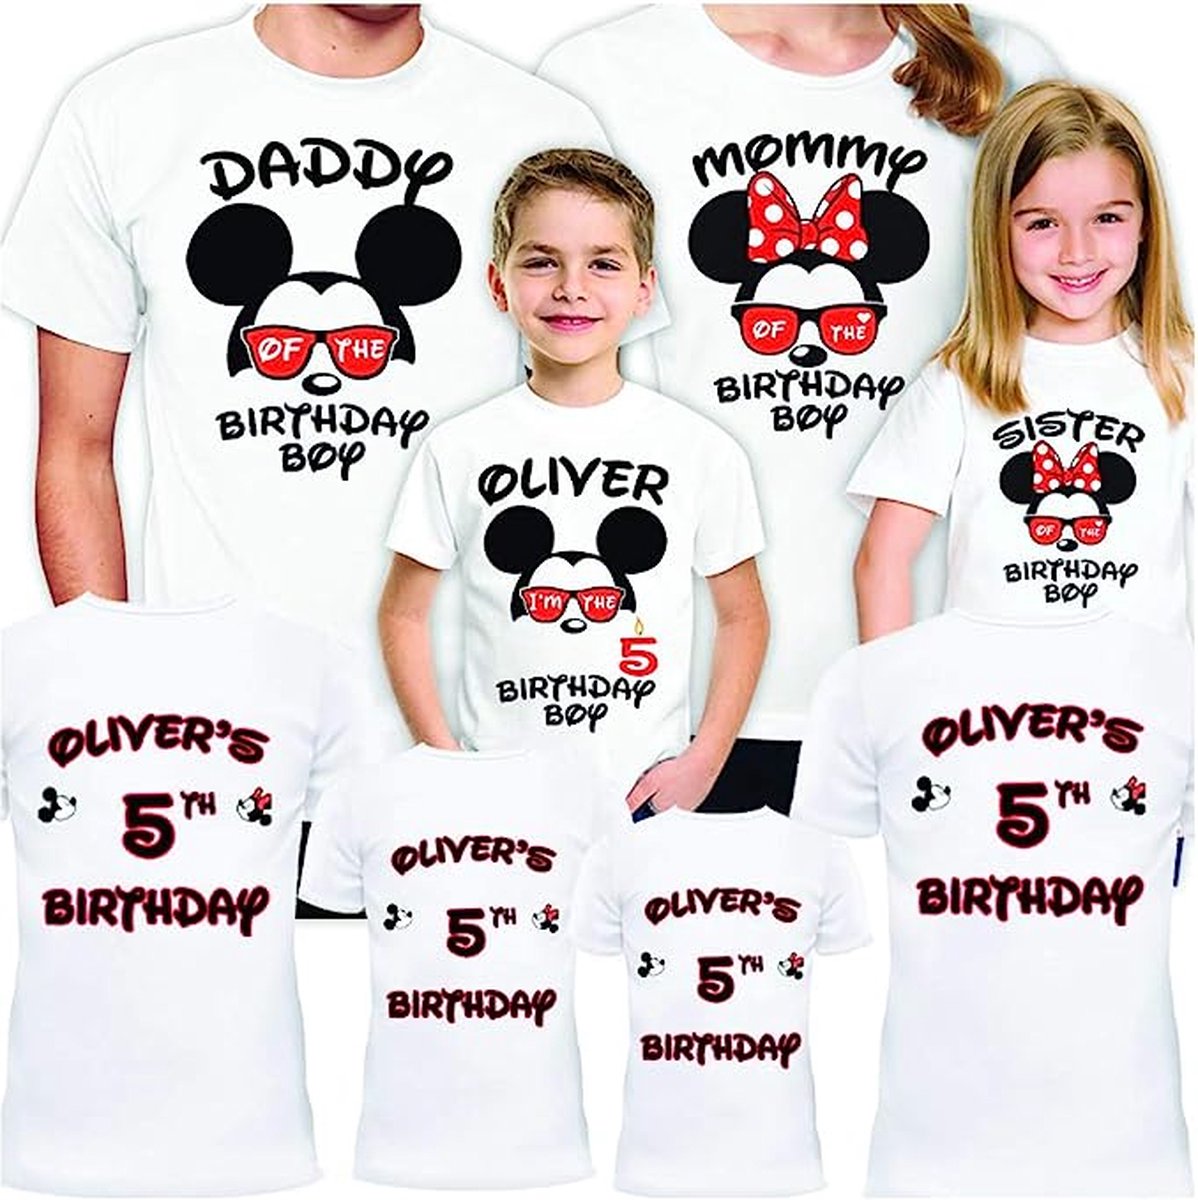 Familie bijpassende outfits voor verjaardagsfeestje, set T-shirts 4-5-6-7 speciale reis voor nieuwjaar